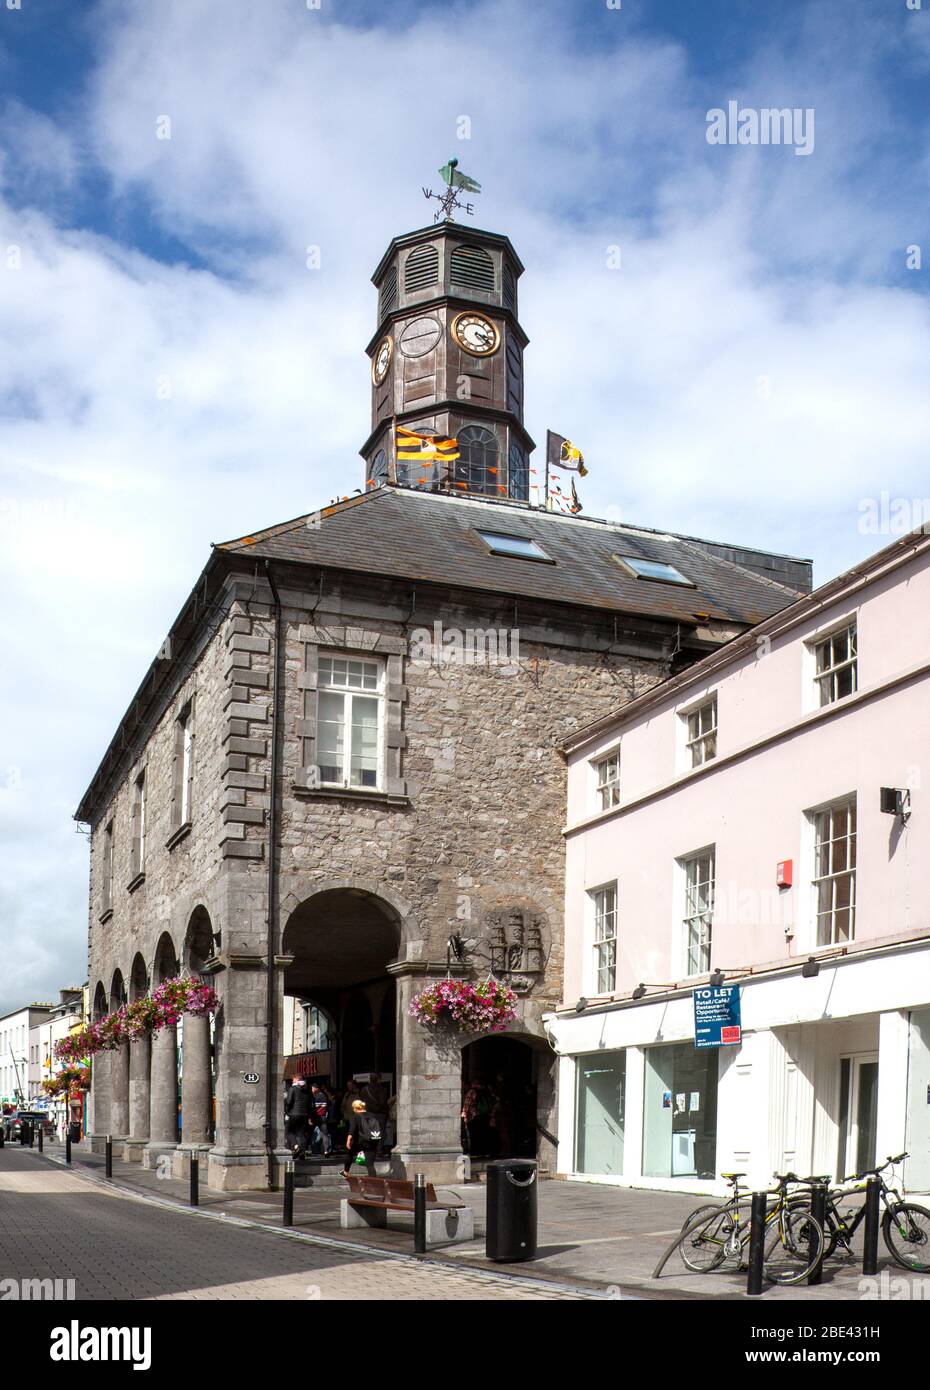 En usage depuis sa construction de calcaire local en 1761, l'hôtel de ville de Tholsel (péage) (ael) abrite maintenant le gouvernement local de Kilkenny. Banque D'Images